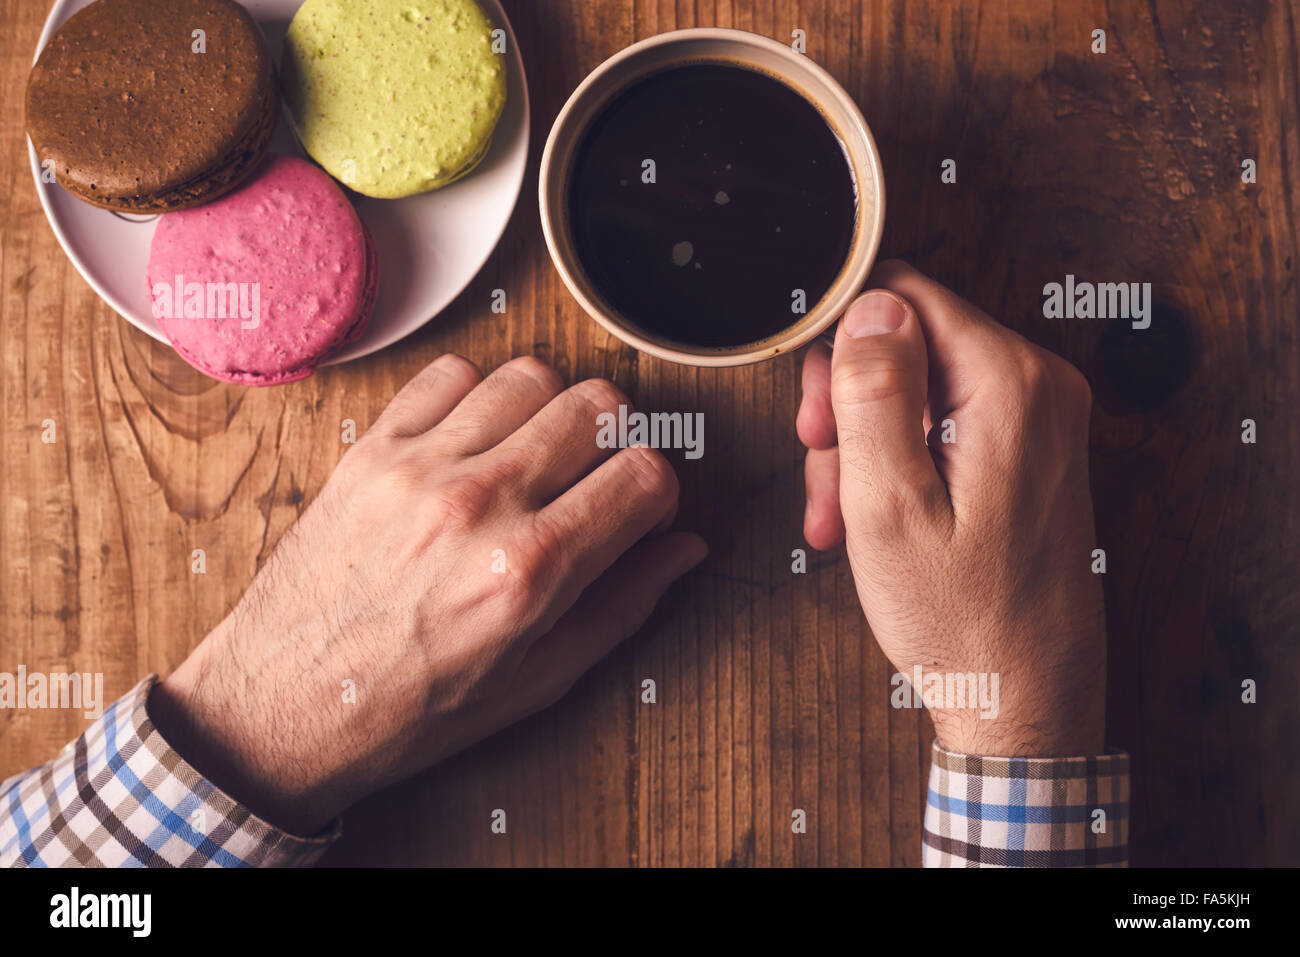 Café et biscuits macaron, homme hand holding cup avec boisson chaude, vue d'en haut, aux couleurs rétro Banque D'Images